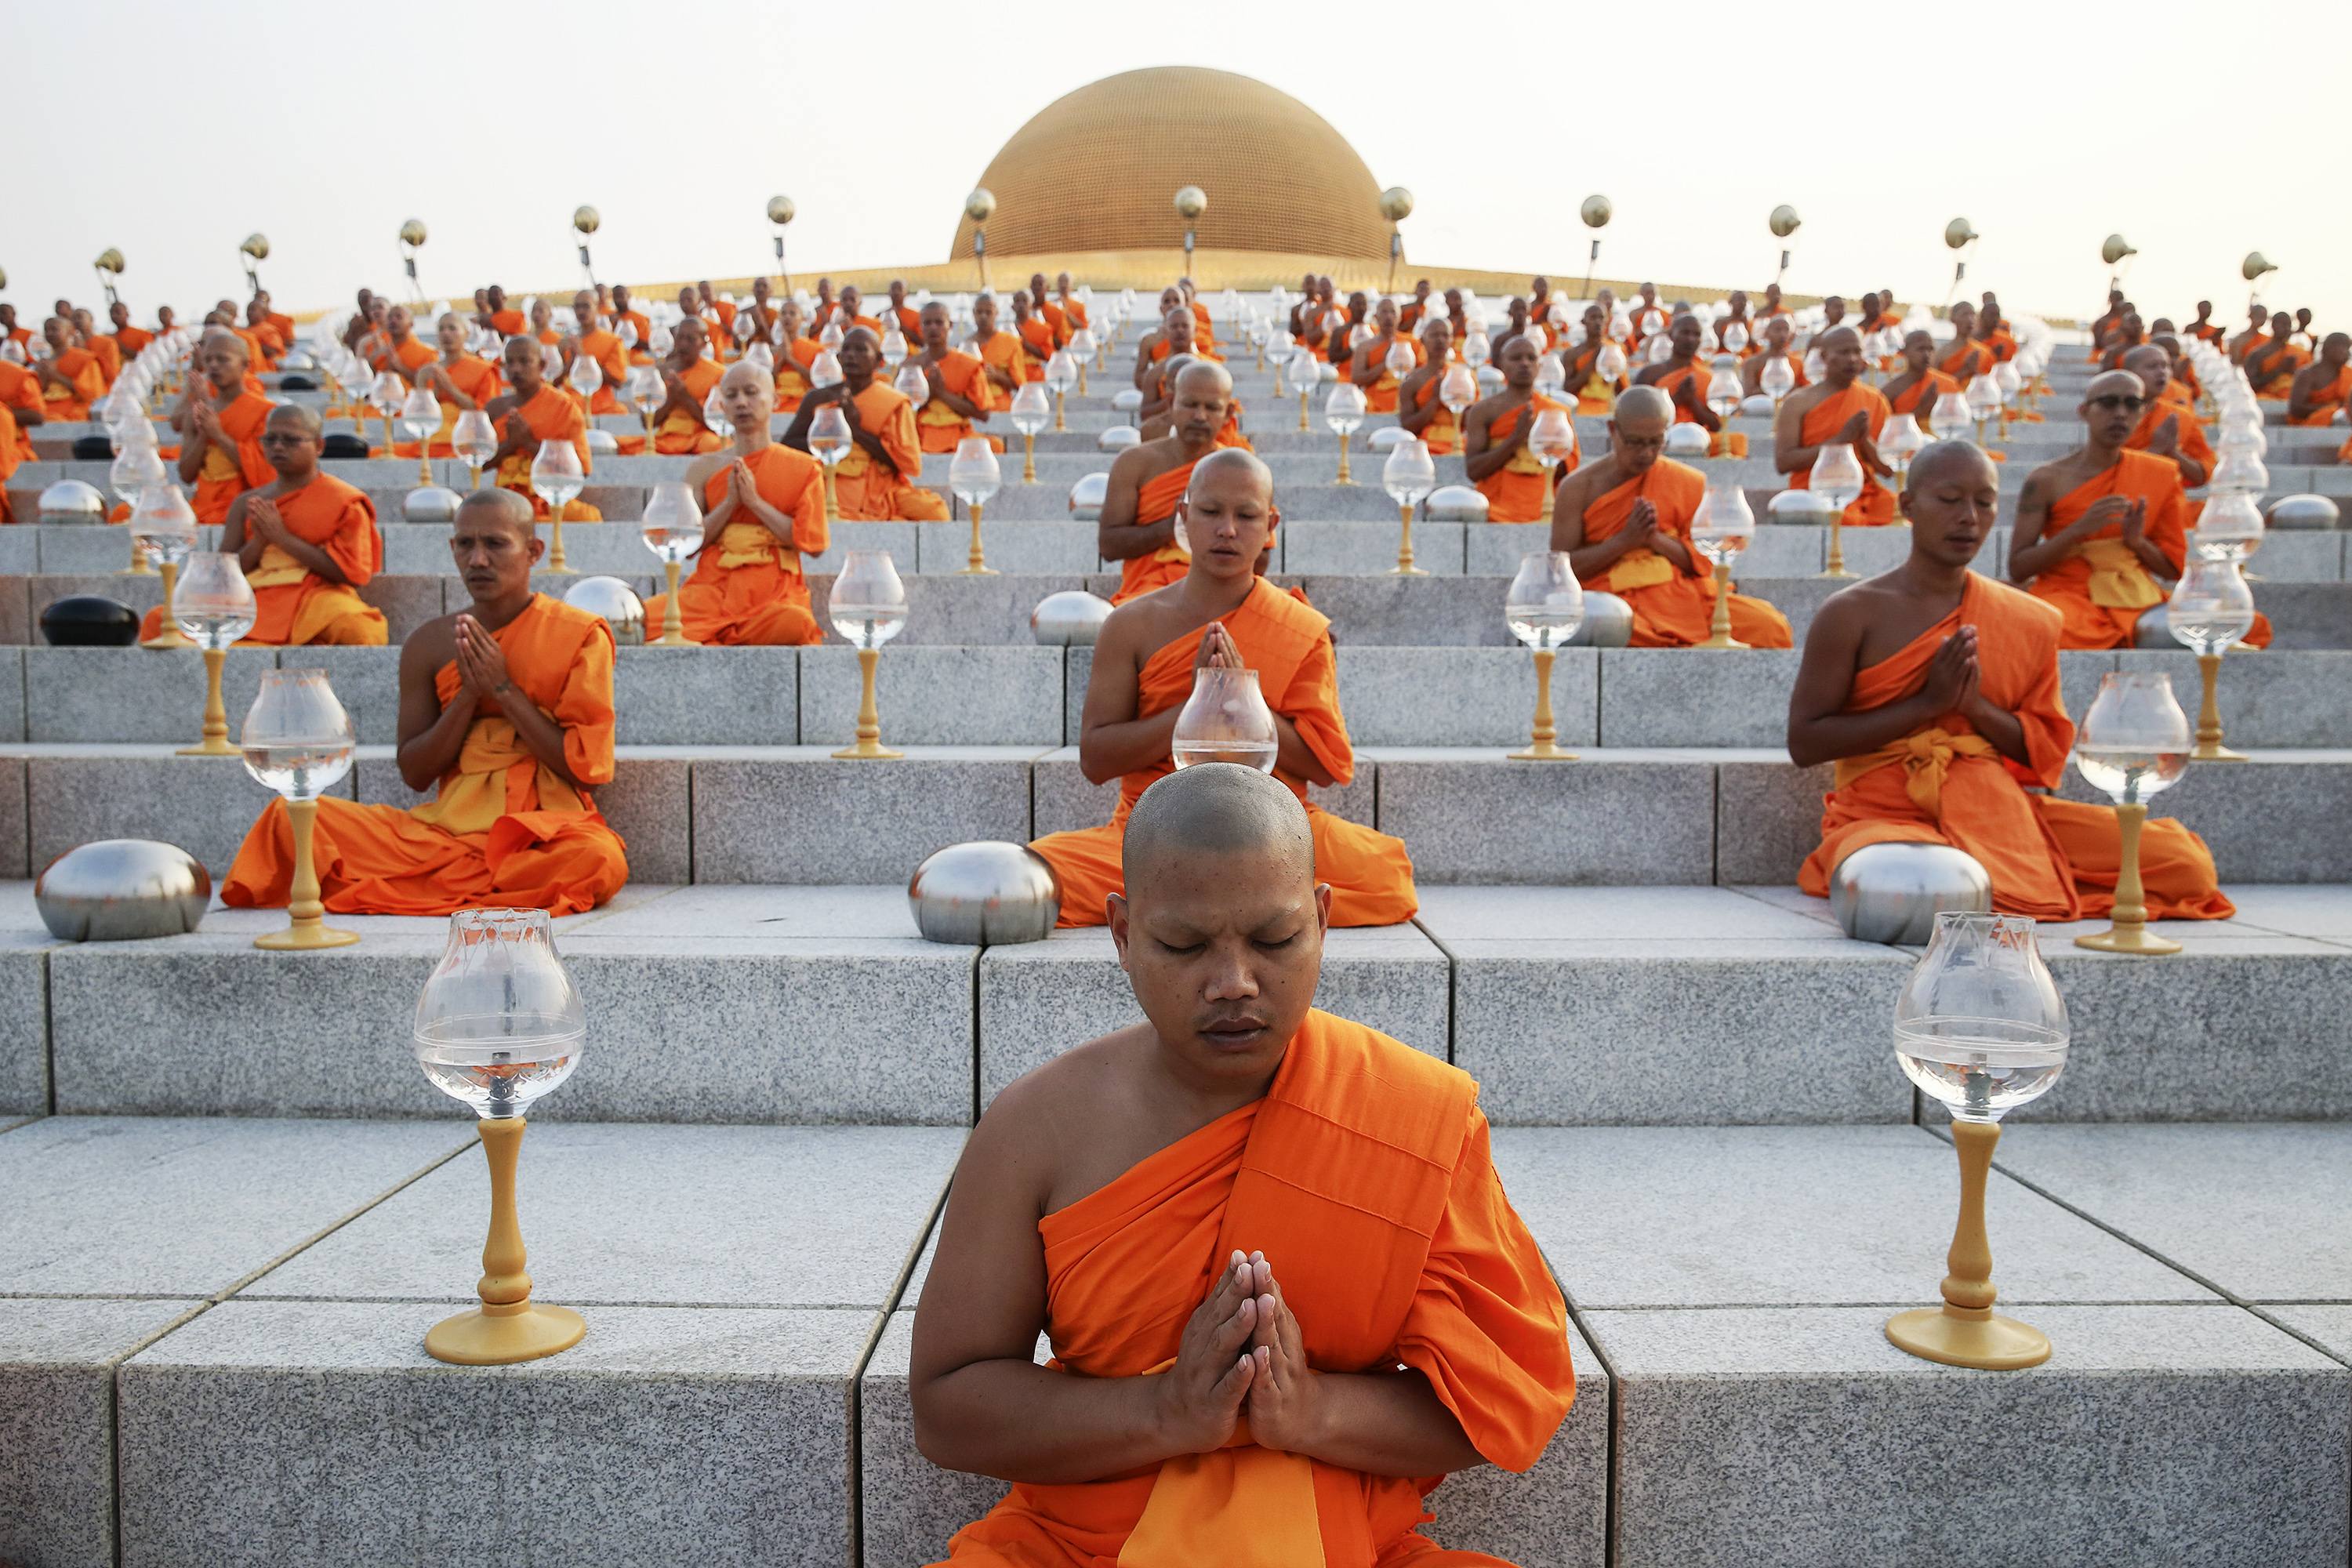 Буддисты это кто. Буддийский монах Тхеравада. Буддизм Тхеравада /хинаяна Будда. Макха Буча. Монахи в храме Будды.